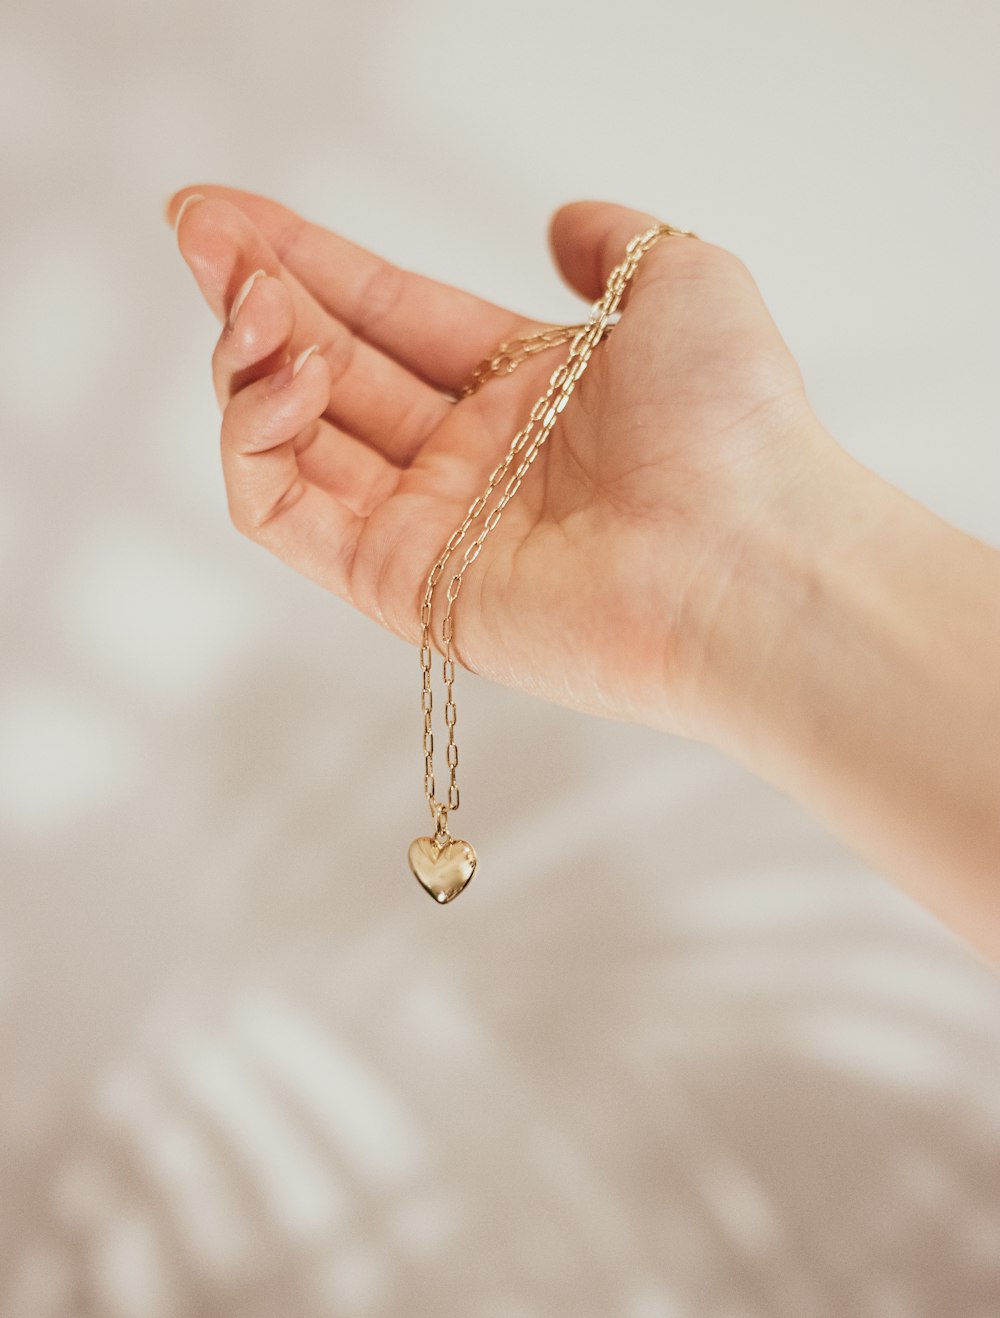 Una mano sosteniendo un amuleto de corazón de oro en una cadena